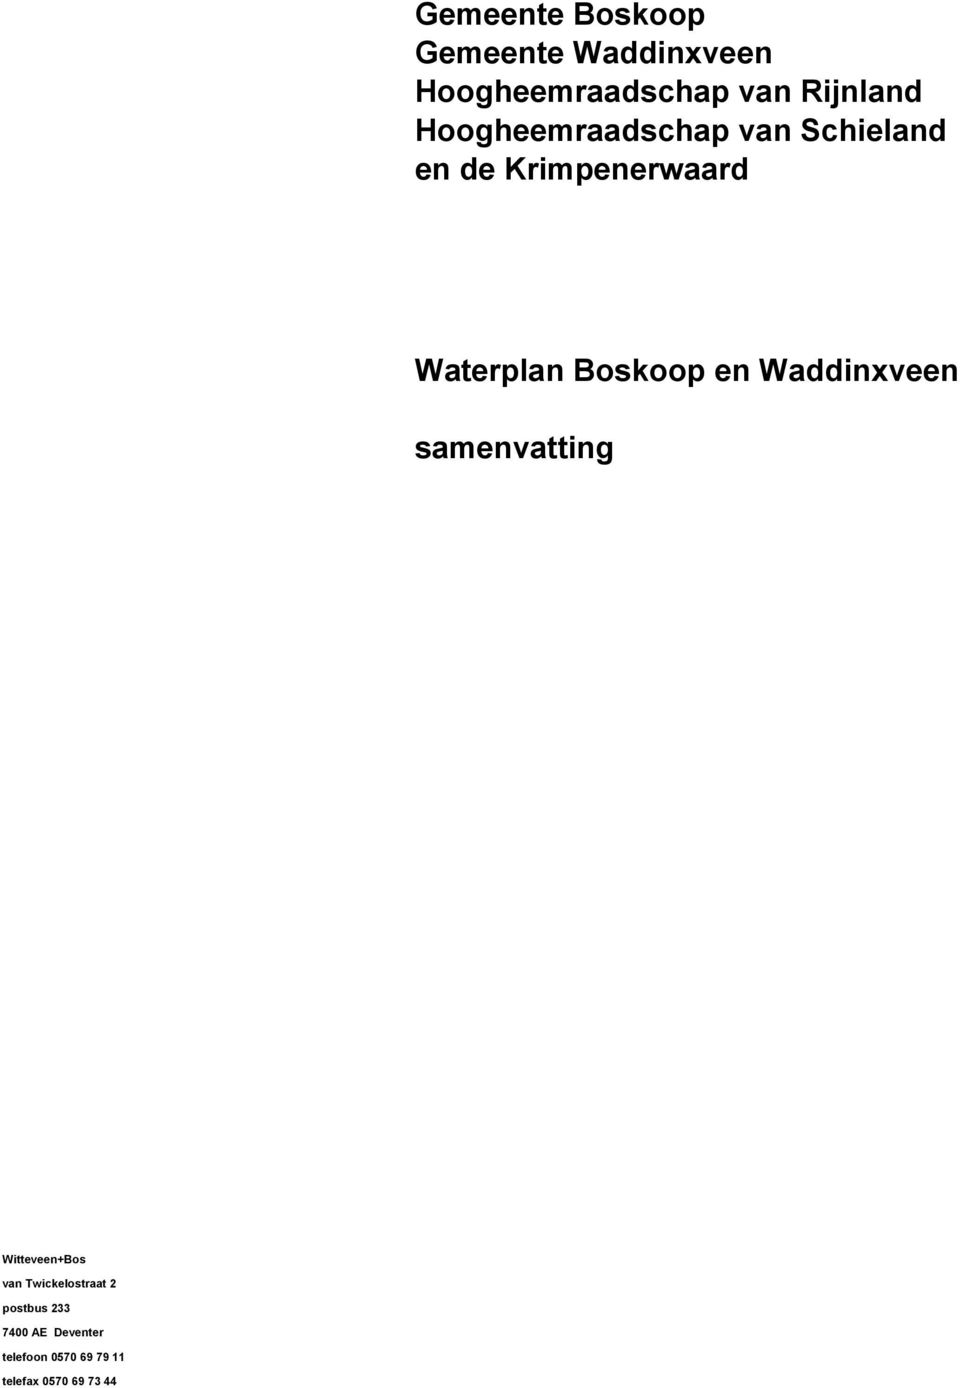 Waterplan Boskoop en Waddinxveen samenvatting van Twickelostraat